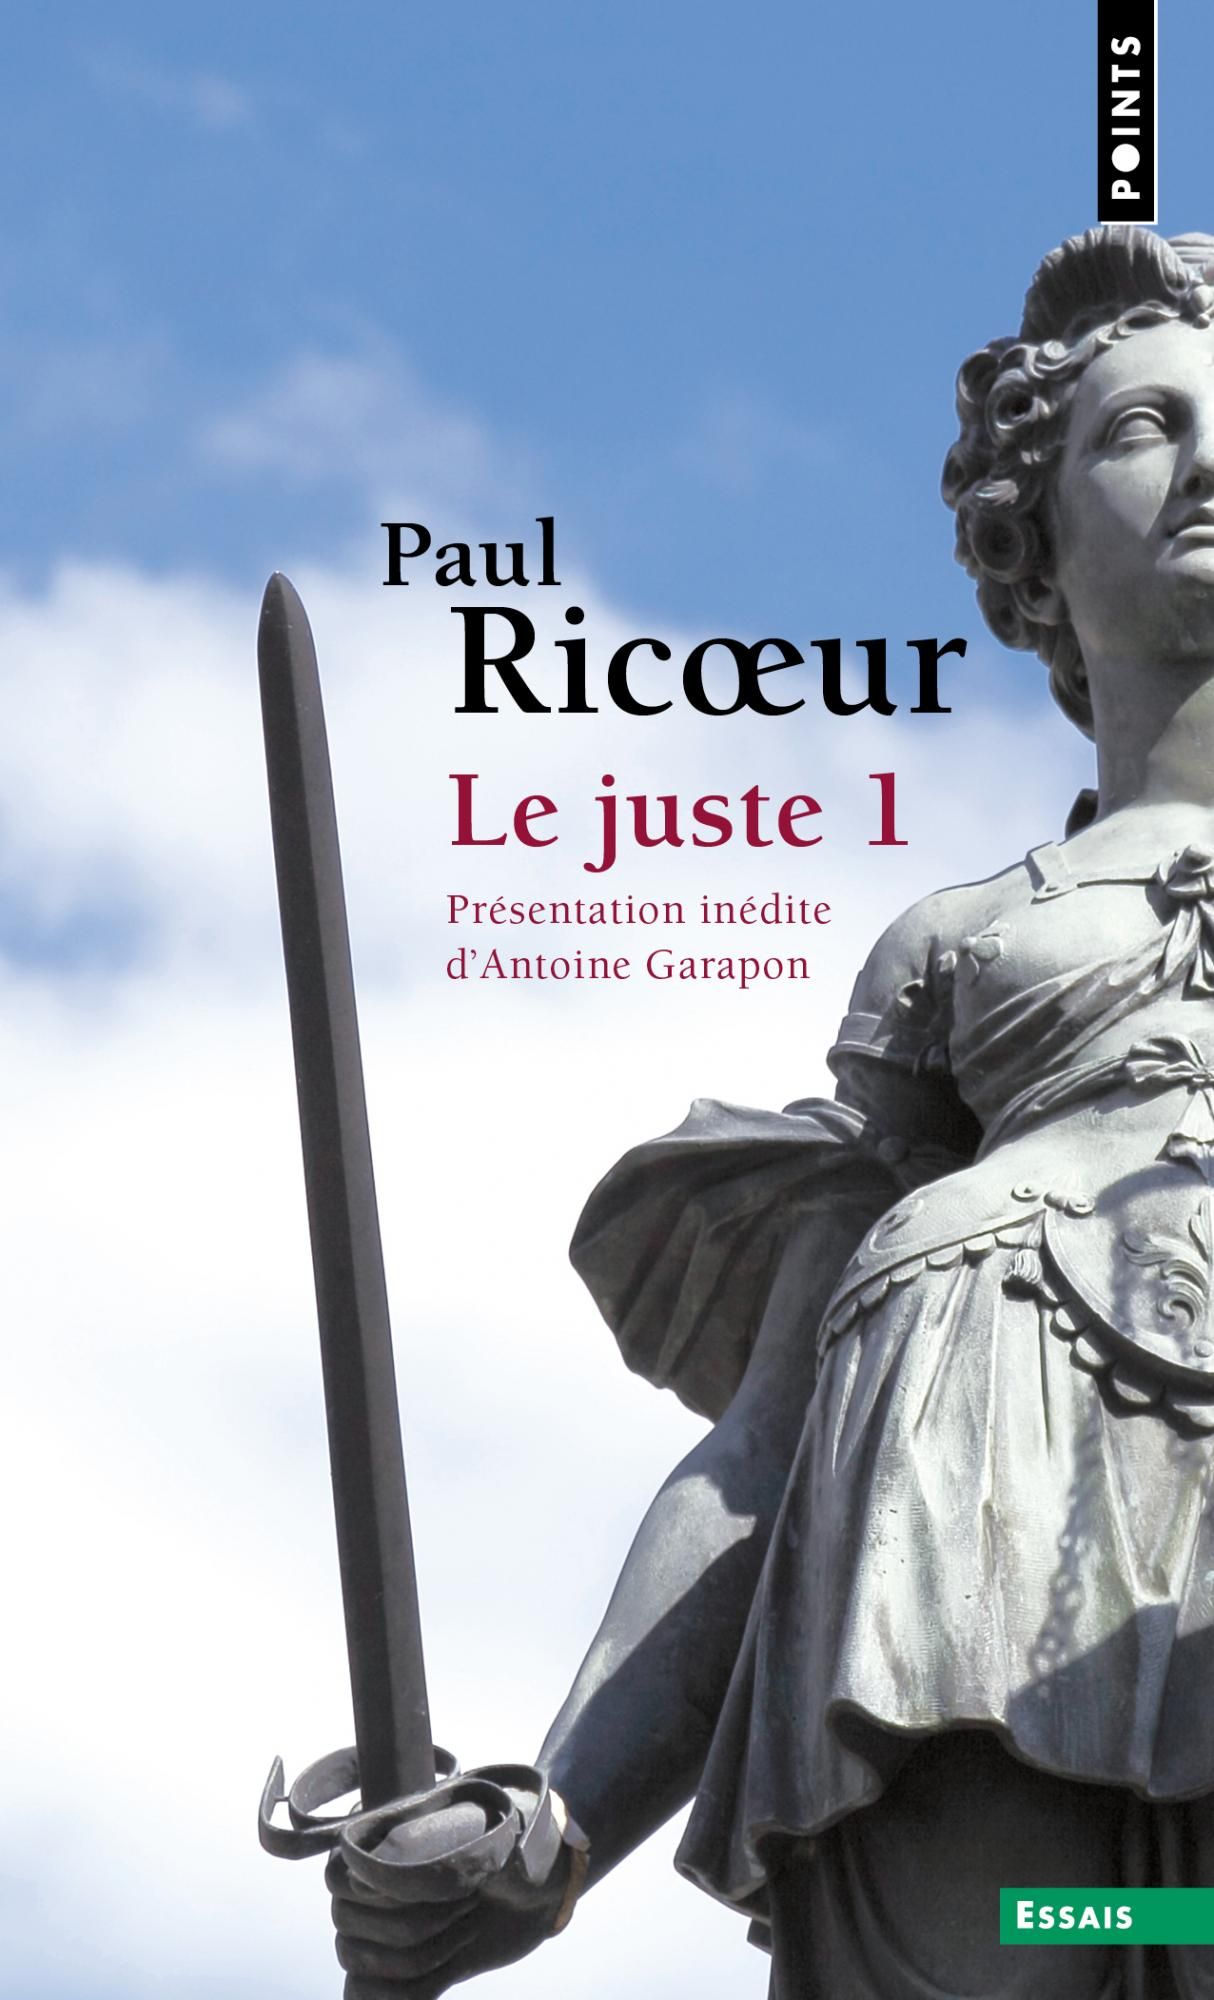 P. Ricoeur, Le Juste 1 (prés. A. Garapon)